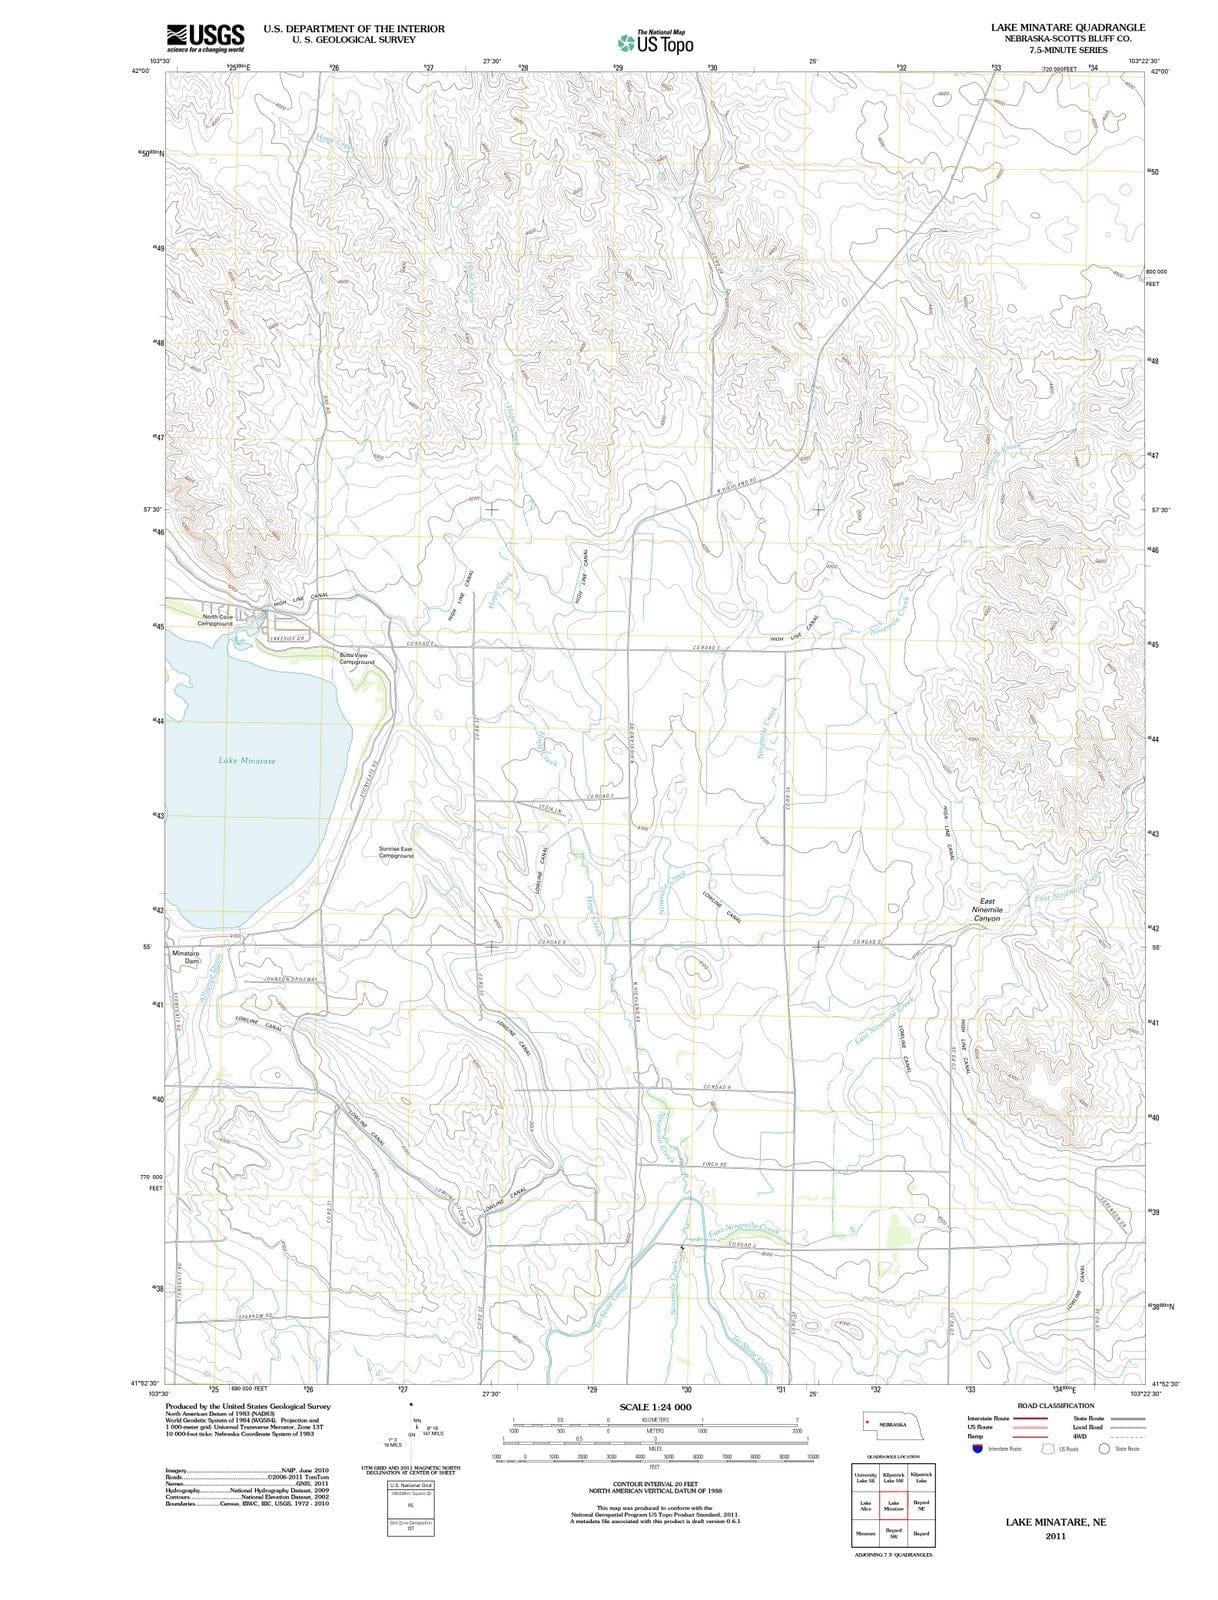 2011 Lake Minatare, NE - Nebraska - USGS Topographic Map